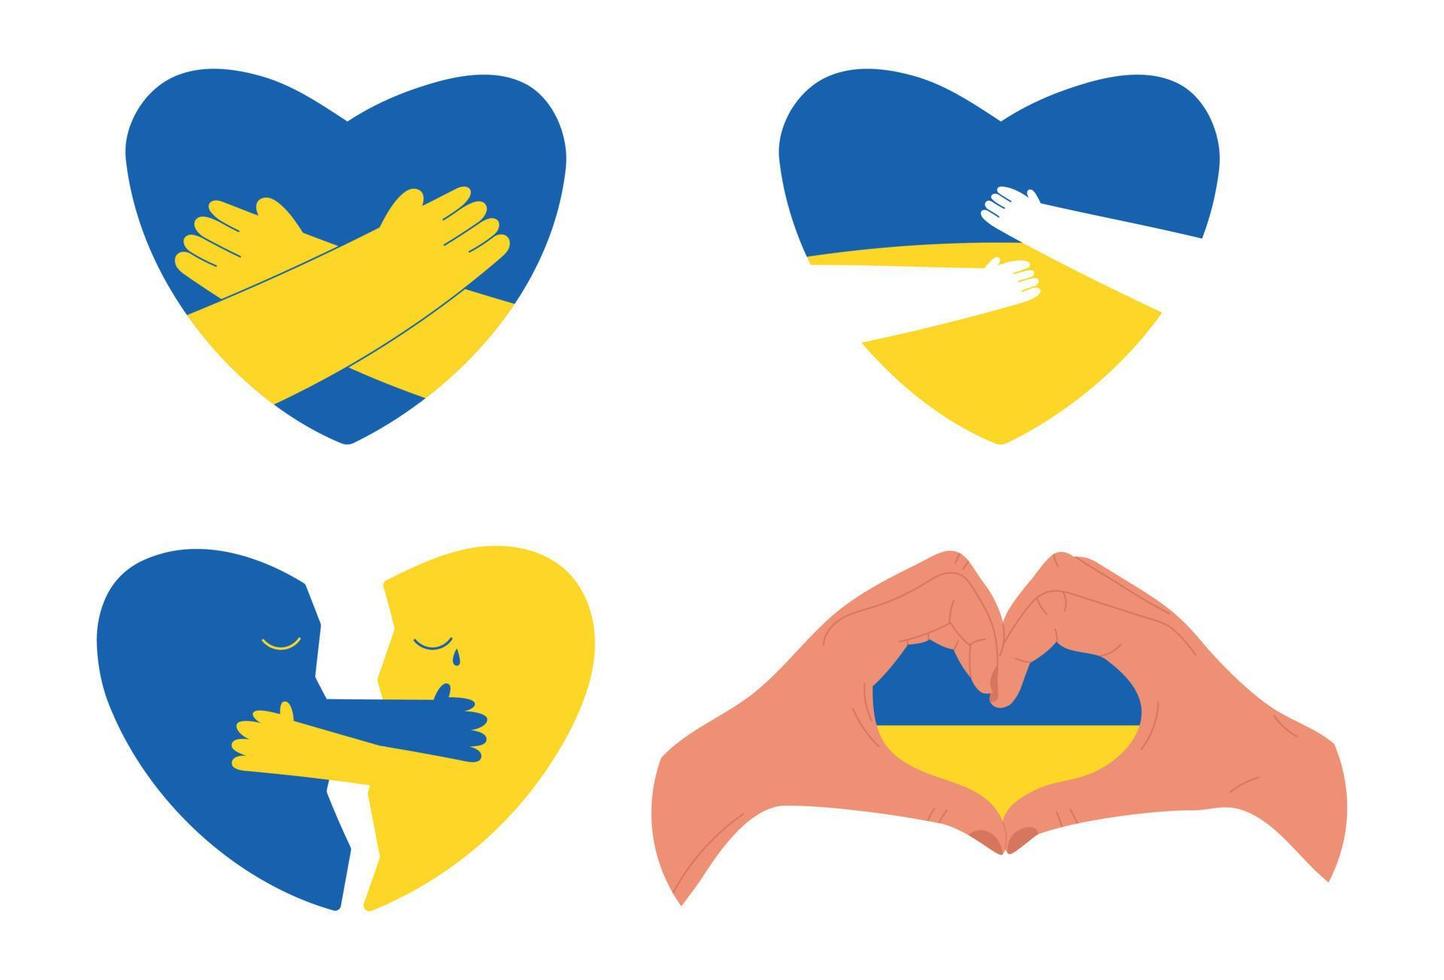 ensemble de coeurs aux couleurs du drapeau ukrainien étreignant et montrant l'amour et le soutien, illustration vectorielle plane isolée sur blanc. concepts de paix et d'aide humanitaire pendant la guerre en ukraine. vecteur